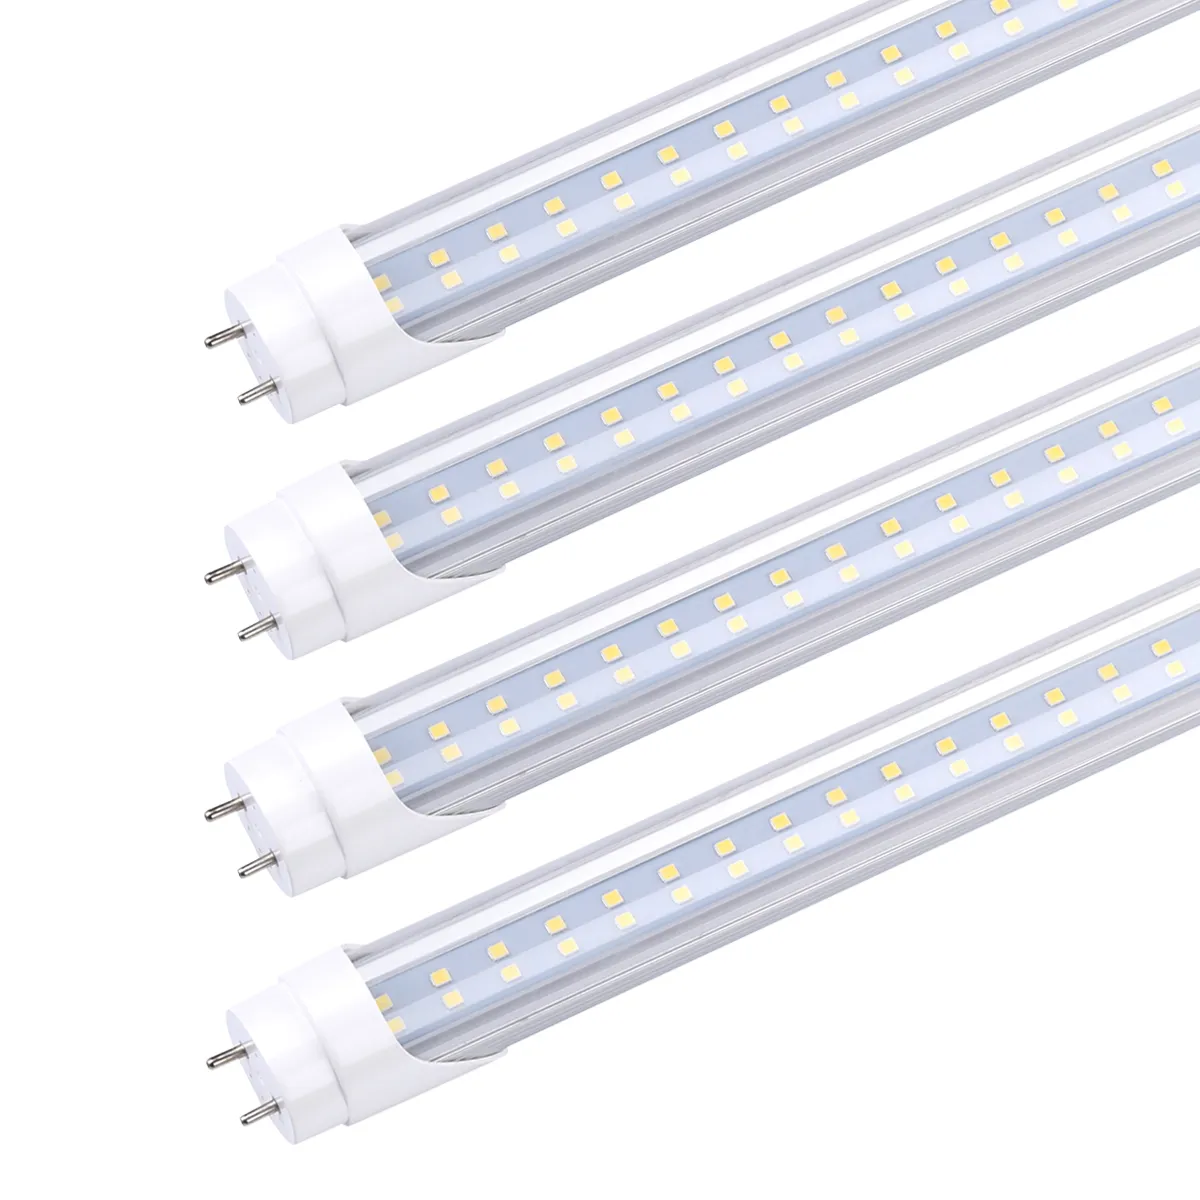 T8 LED-rörlampan, 4ft 22W 28W, G13 Bi-Pin, T8 T10 T12 fluorescerande belysningslampor ersättning, ballast bypass, dubbeländ kraft, klar täckning, 4 fot butiksljus